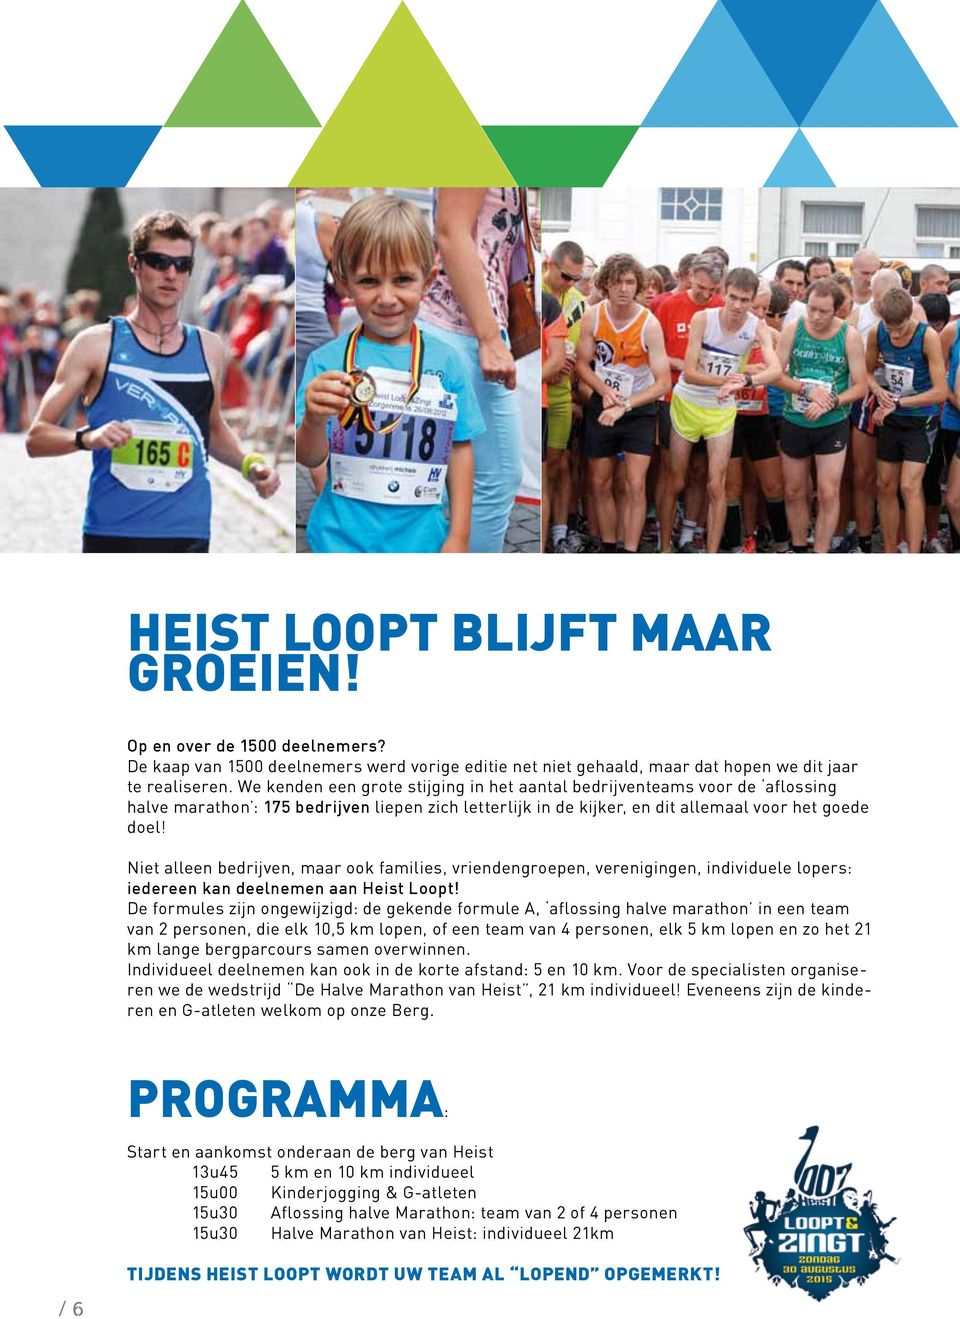 Niet alleen bedrijven, maar ook families, vriendengroepen, verenigingen, individuele lopers: iedereen kan deelnemen aan Heist Loopt!